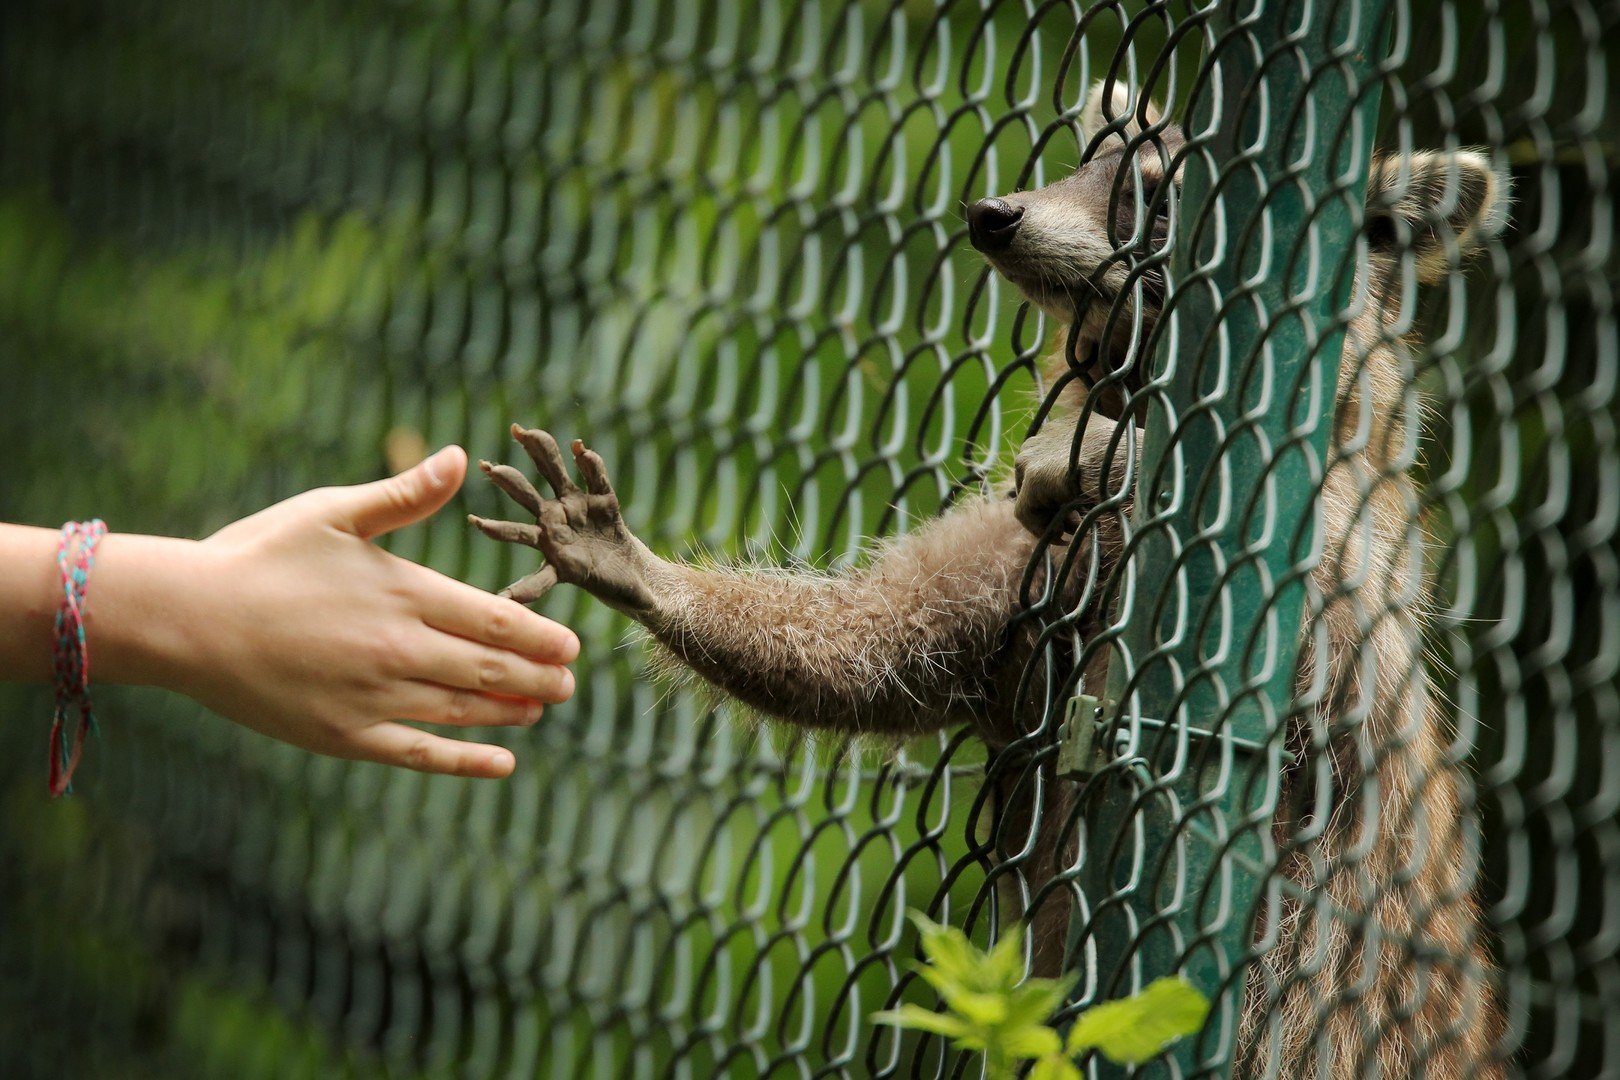 حيوان الراكون يمد يده من داخل القفص بحديقة للحيوان في جنوب ألمانيا، ليصافح أحد الزائرين، 21 يونيو 